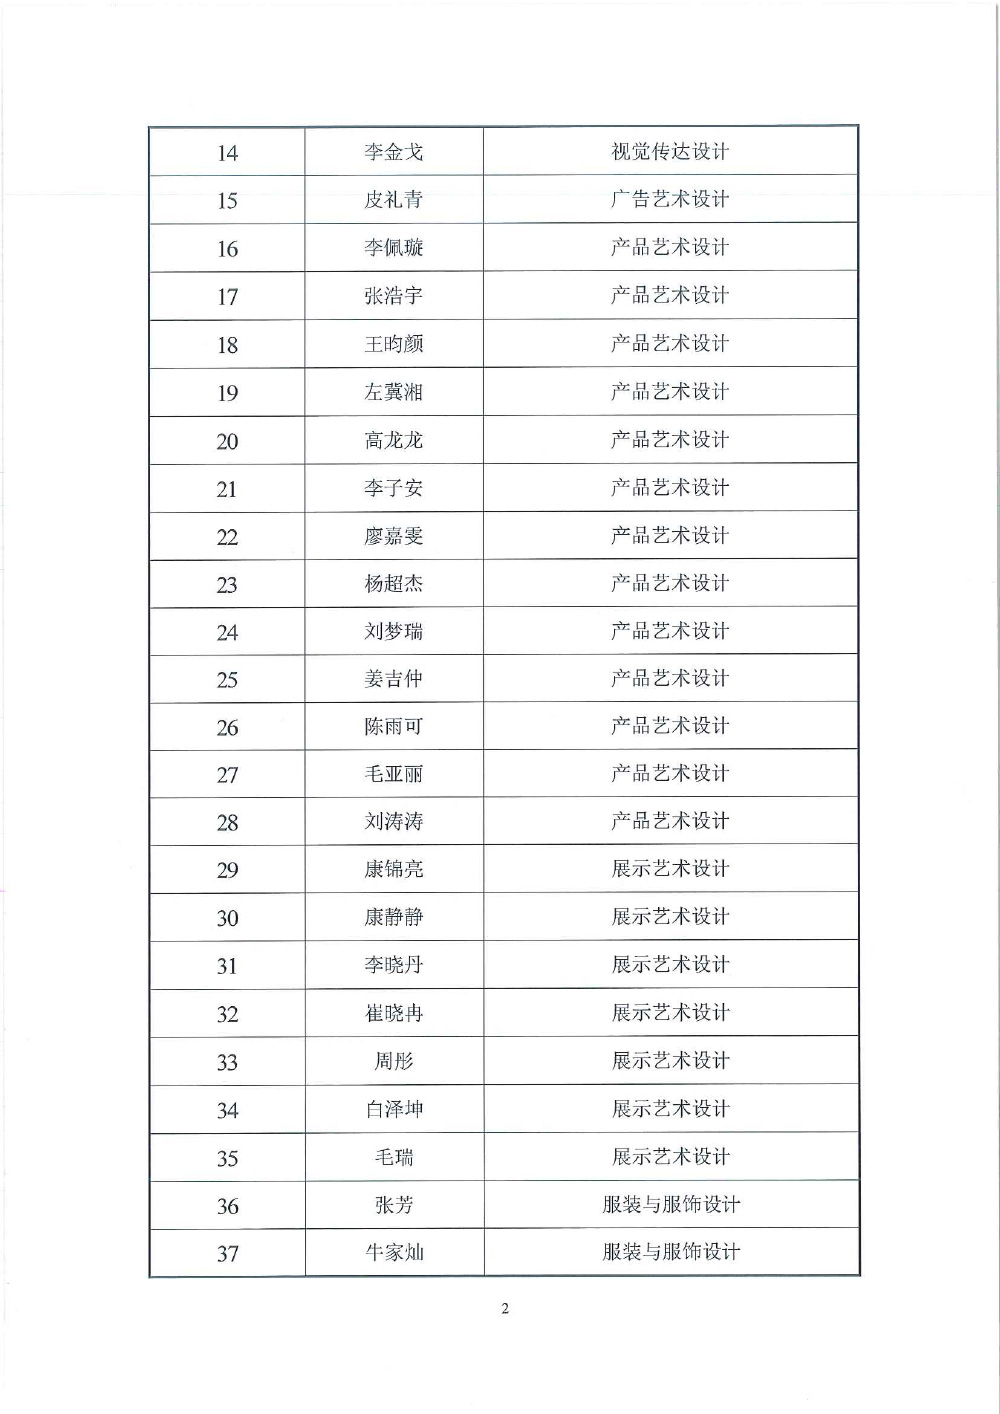 天下足球网天津市求职创业补贴工作的公示(1)-2.jpg